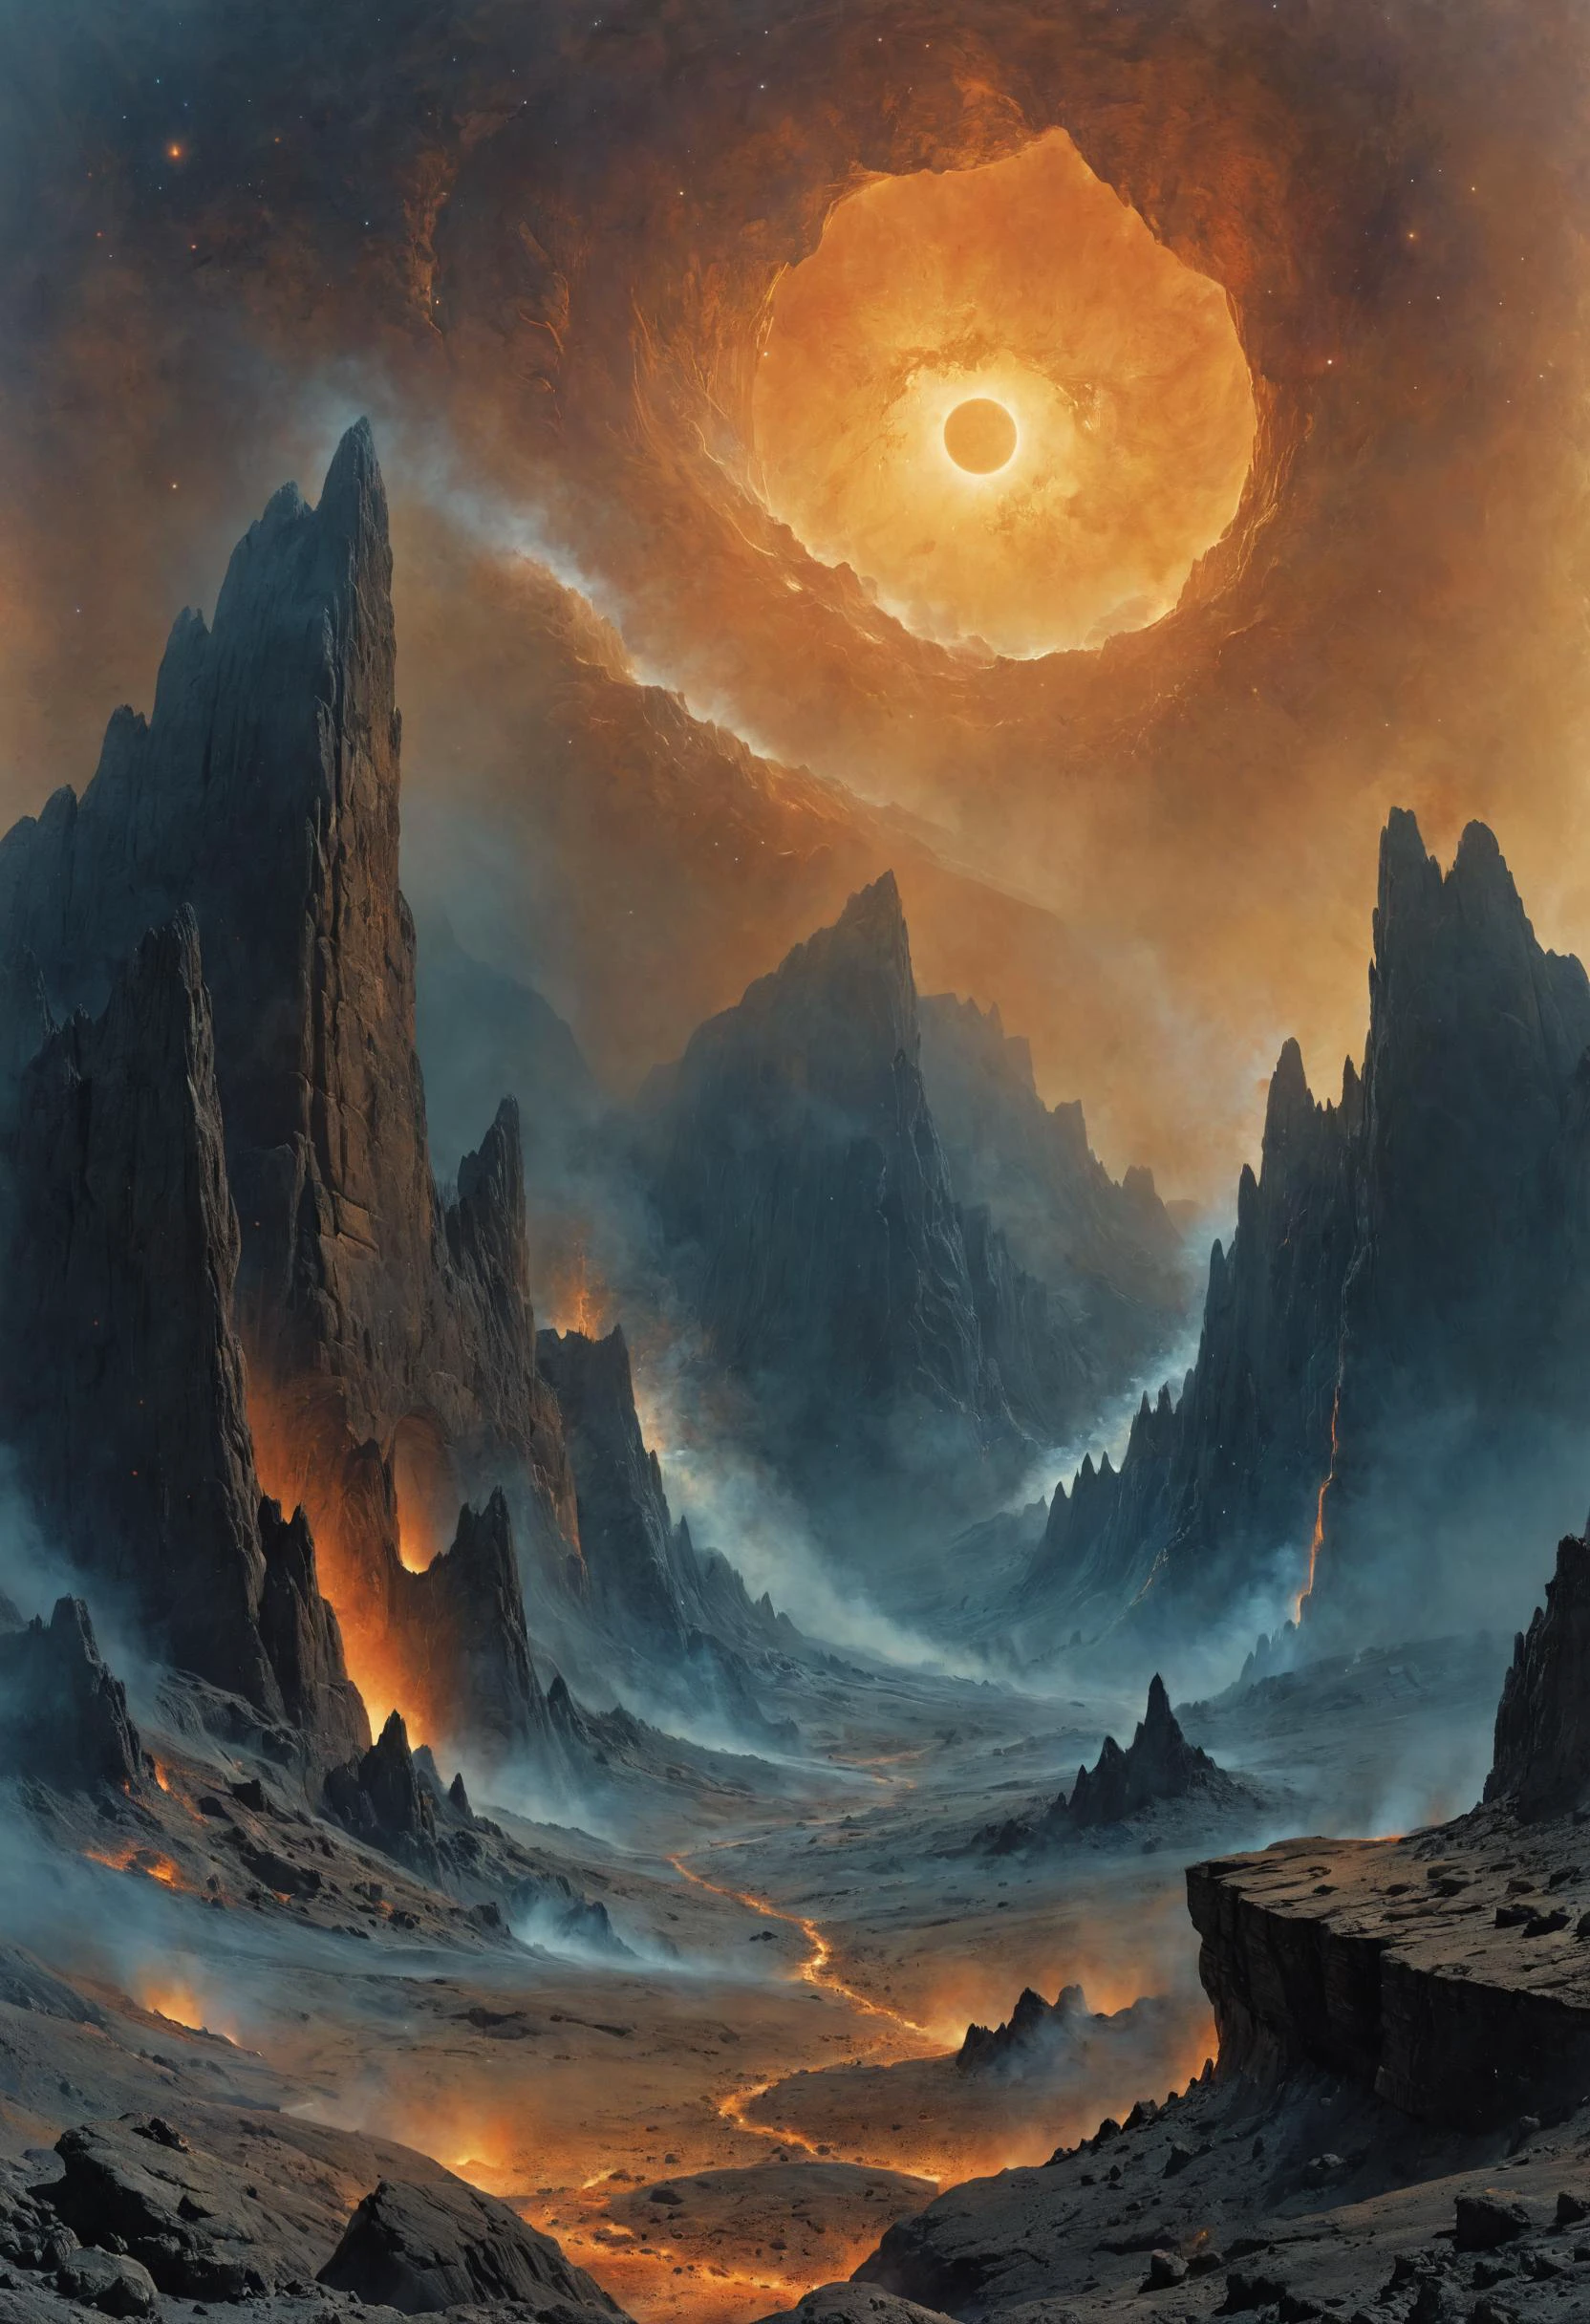 paisagem alienígena, Enormes arcos rochosos emoldurando campos estelares distantes, Gêiseres fumegantes em meio a paisagens vulcânicas , flora alienígena, Onda de brilho, PENeonUV, 